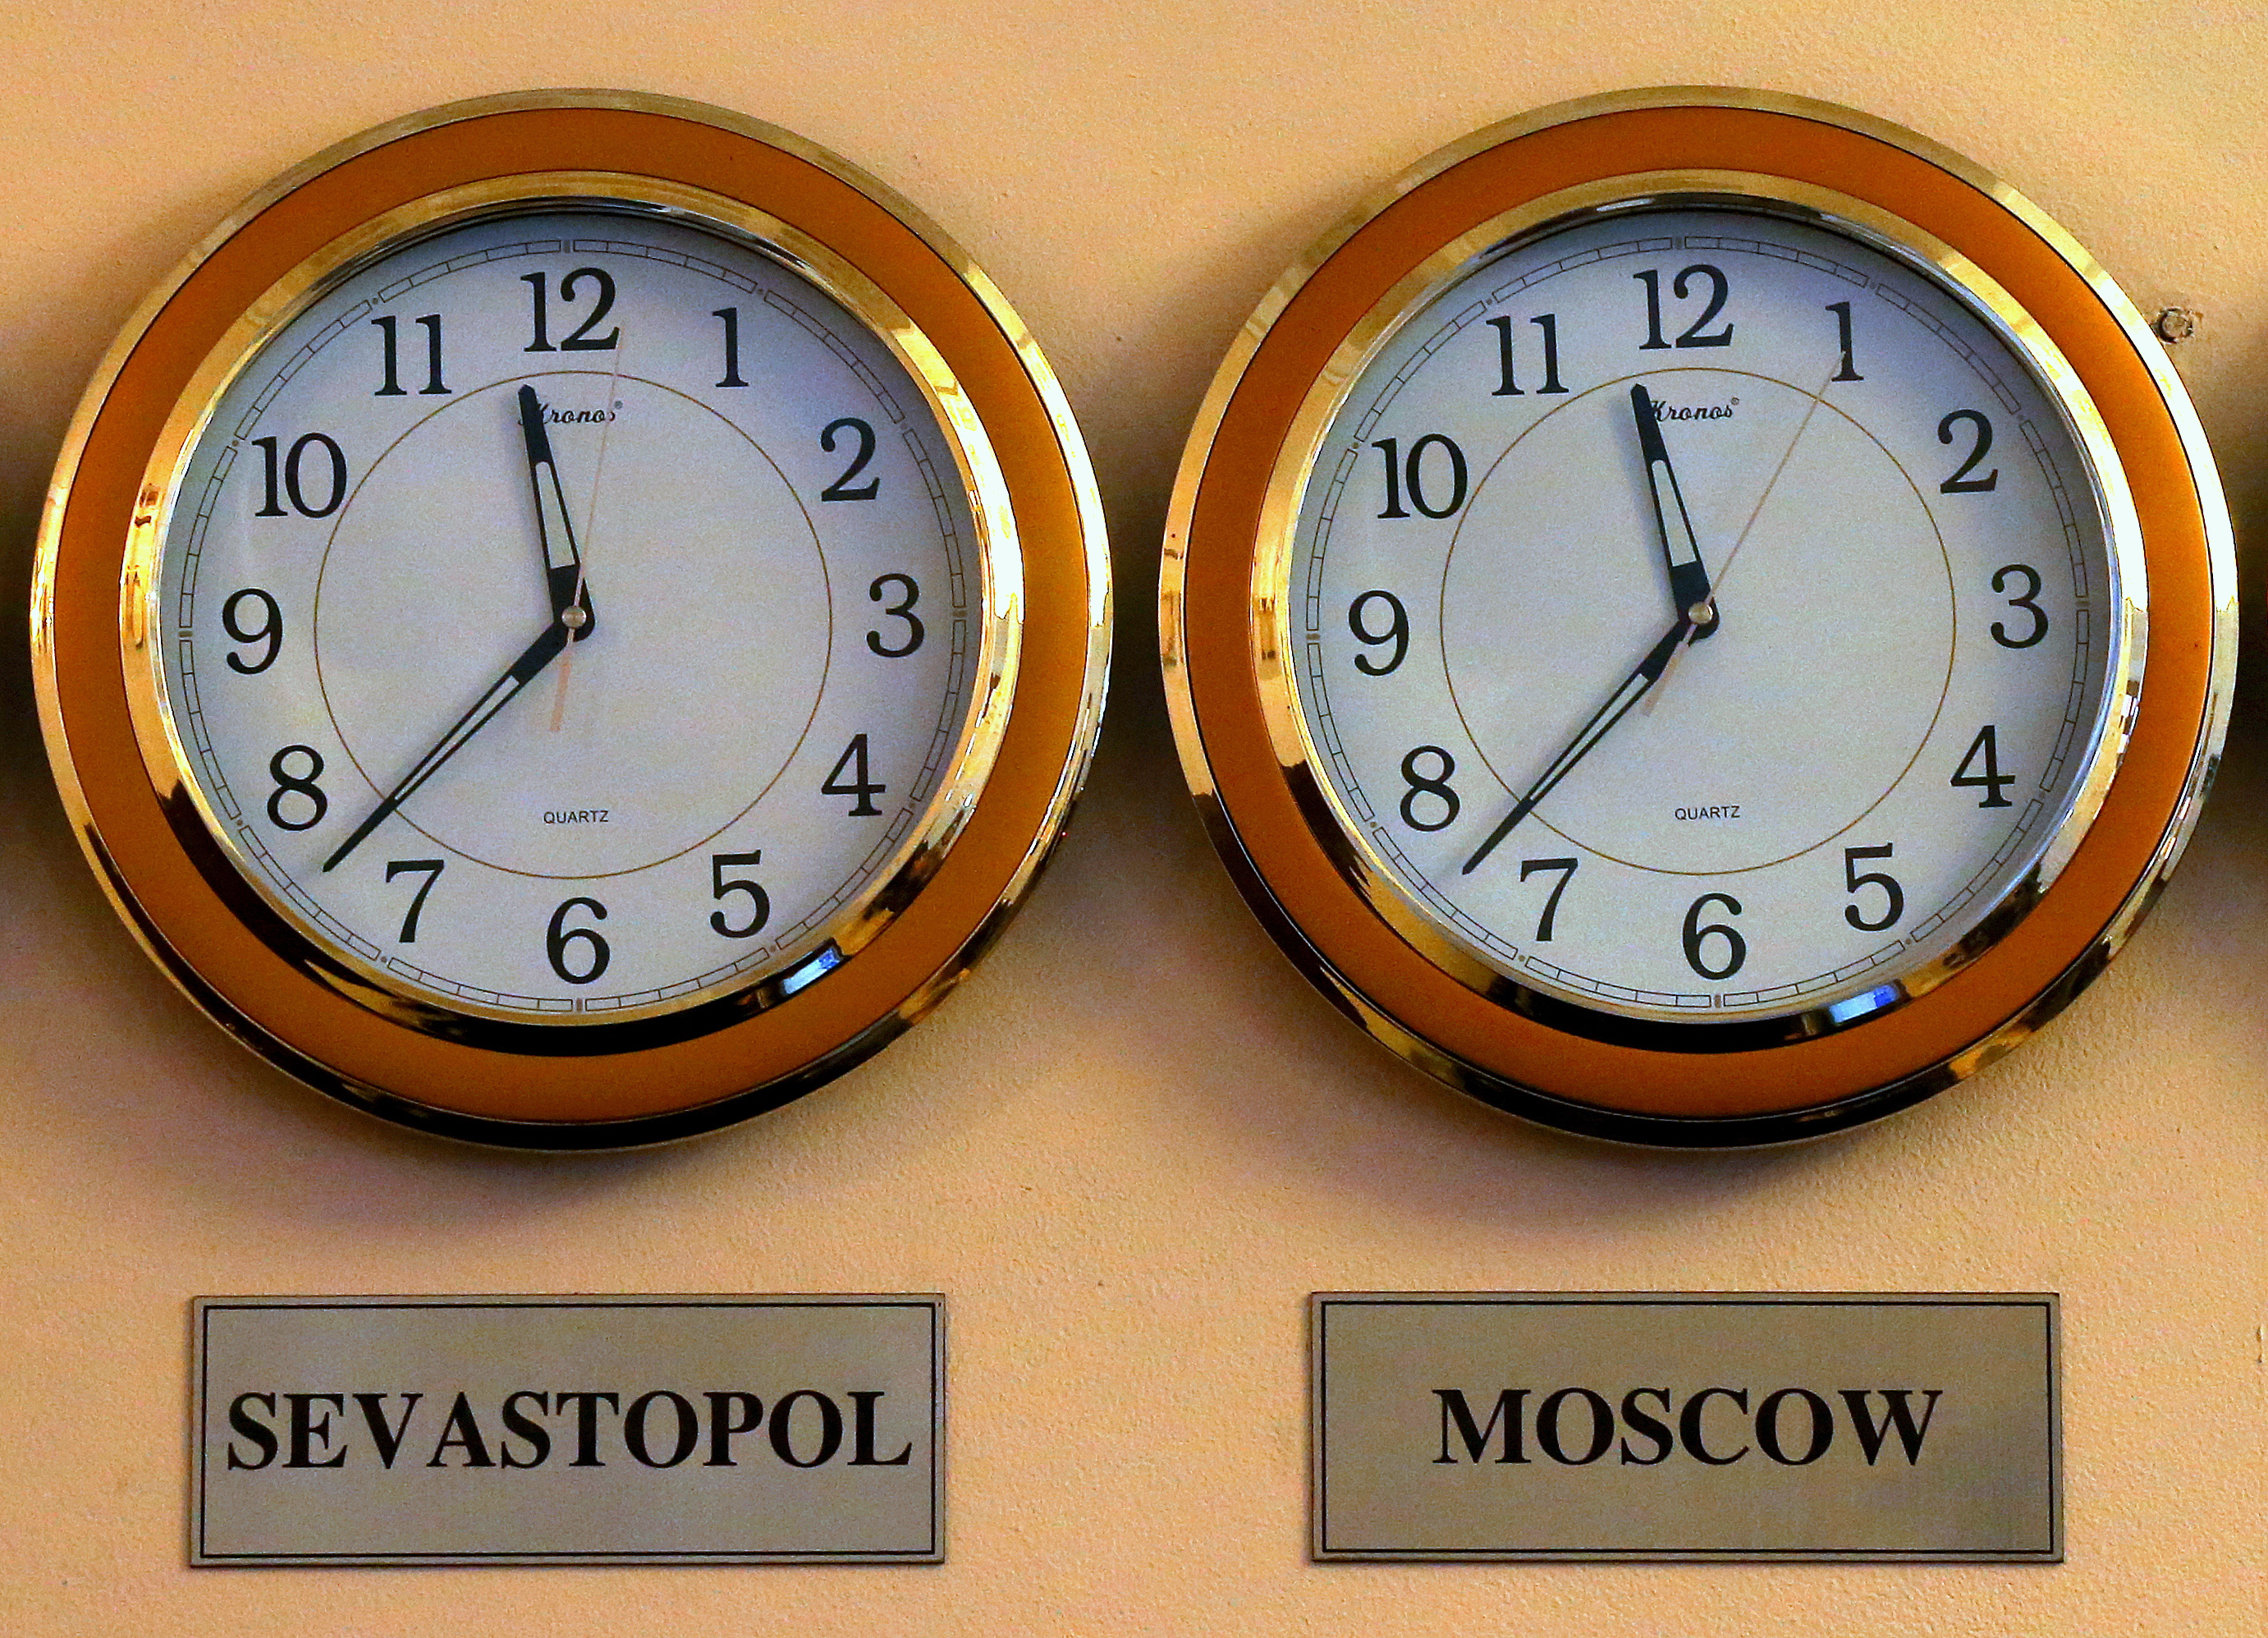 Переведи часы на московской